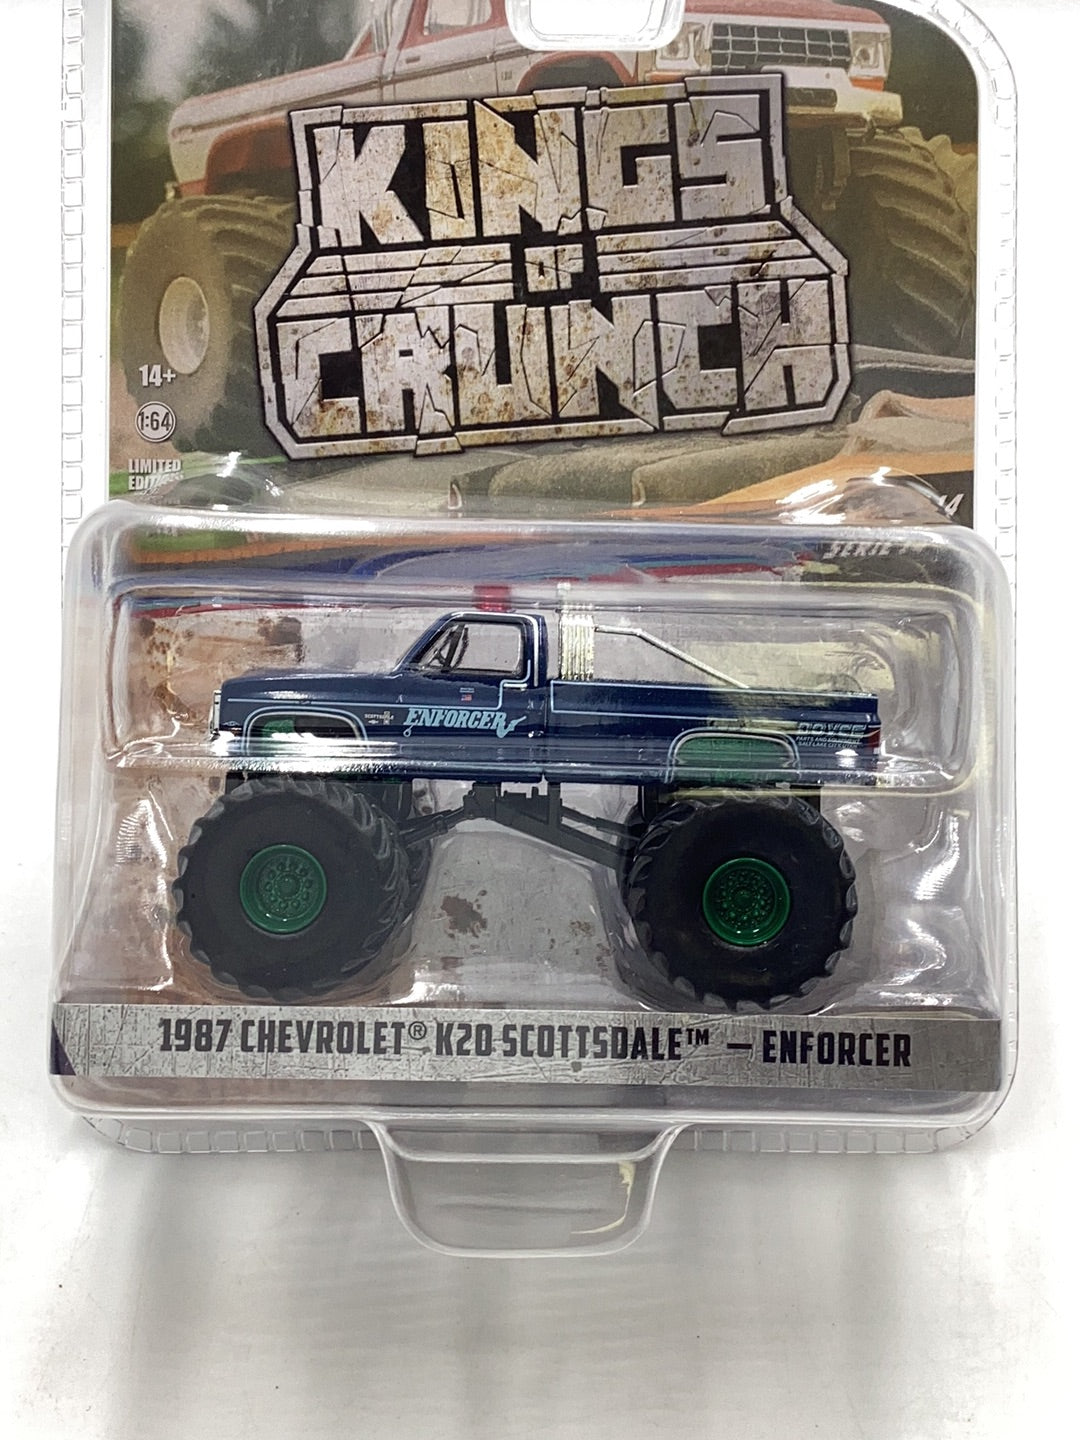 Greenlight Kings of crunch series 14 1987 Chevrolet K20 Scottsdale Enforcer Chase